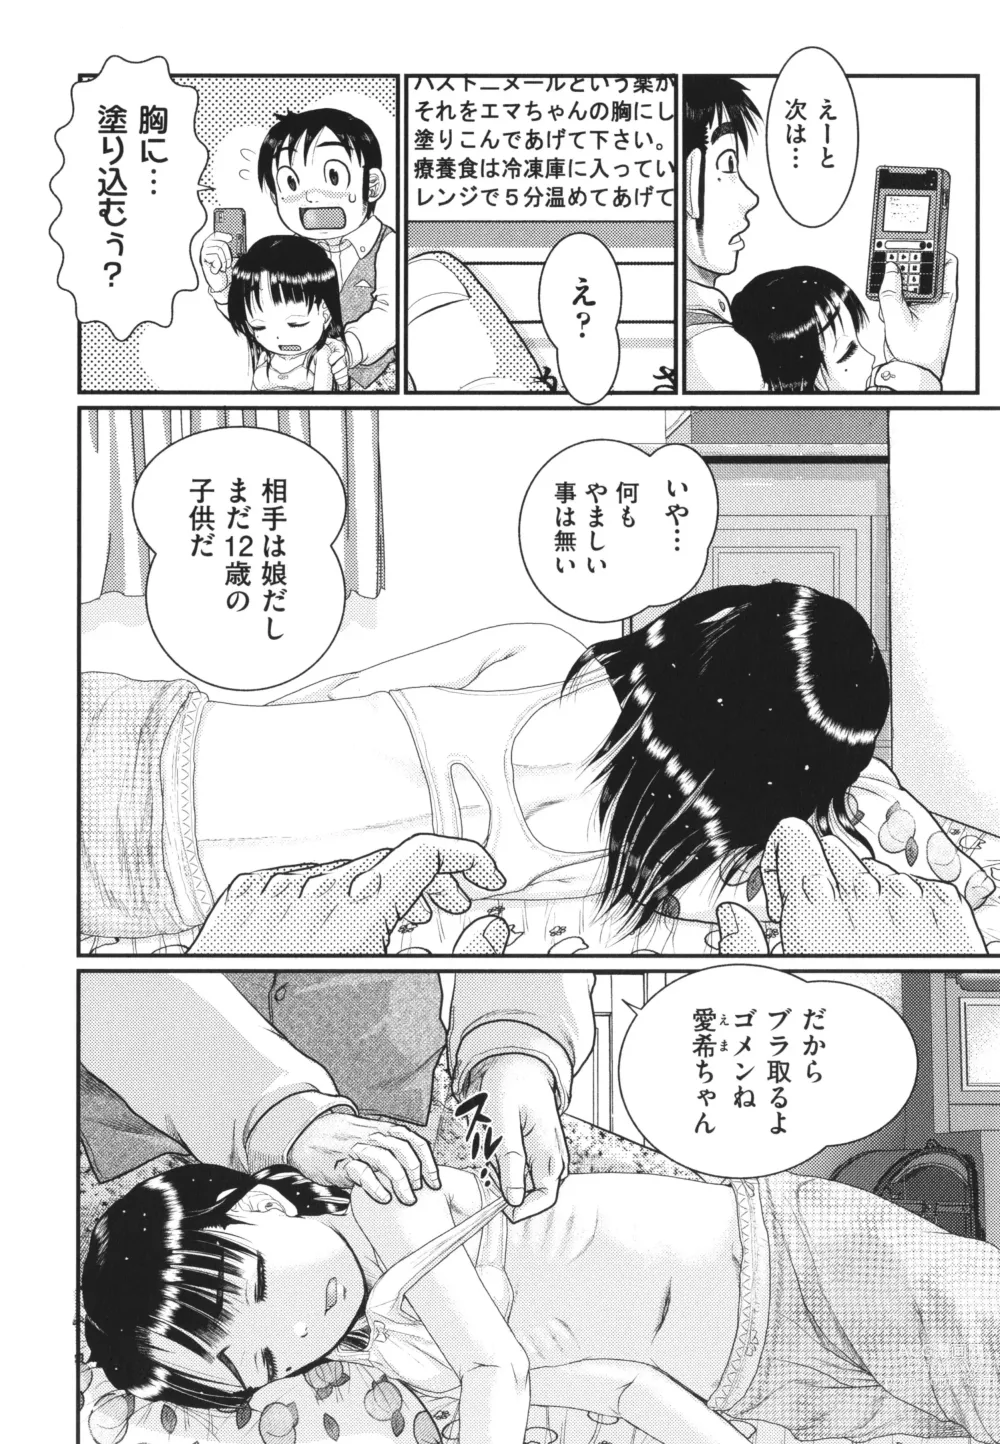 Page 189 of manga Akarui Kazoku Kyoujoku